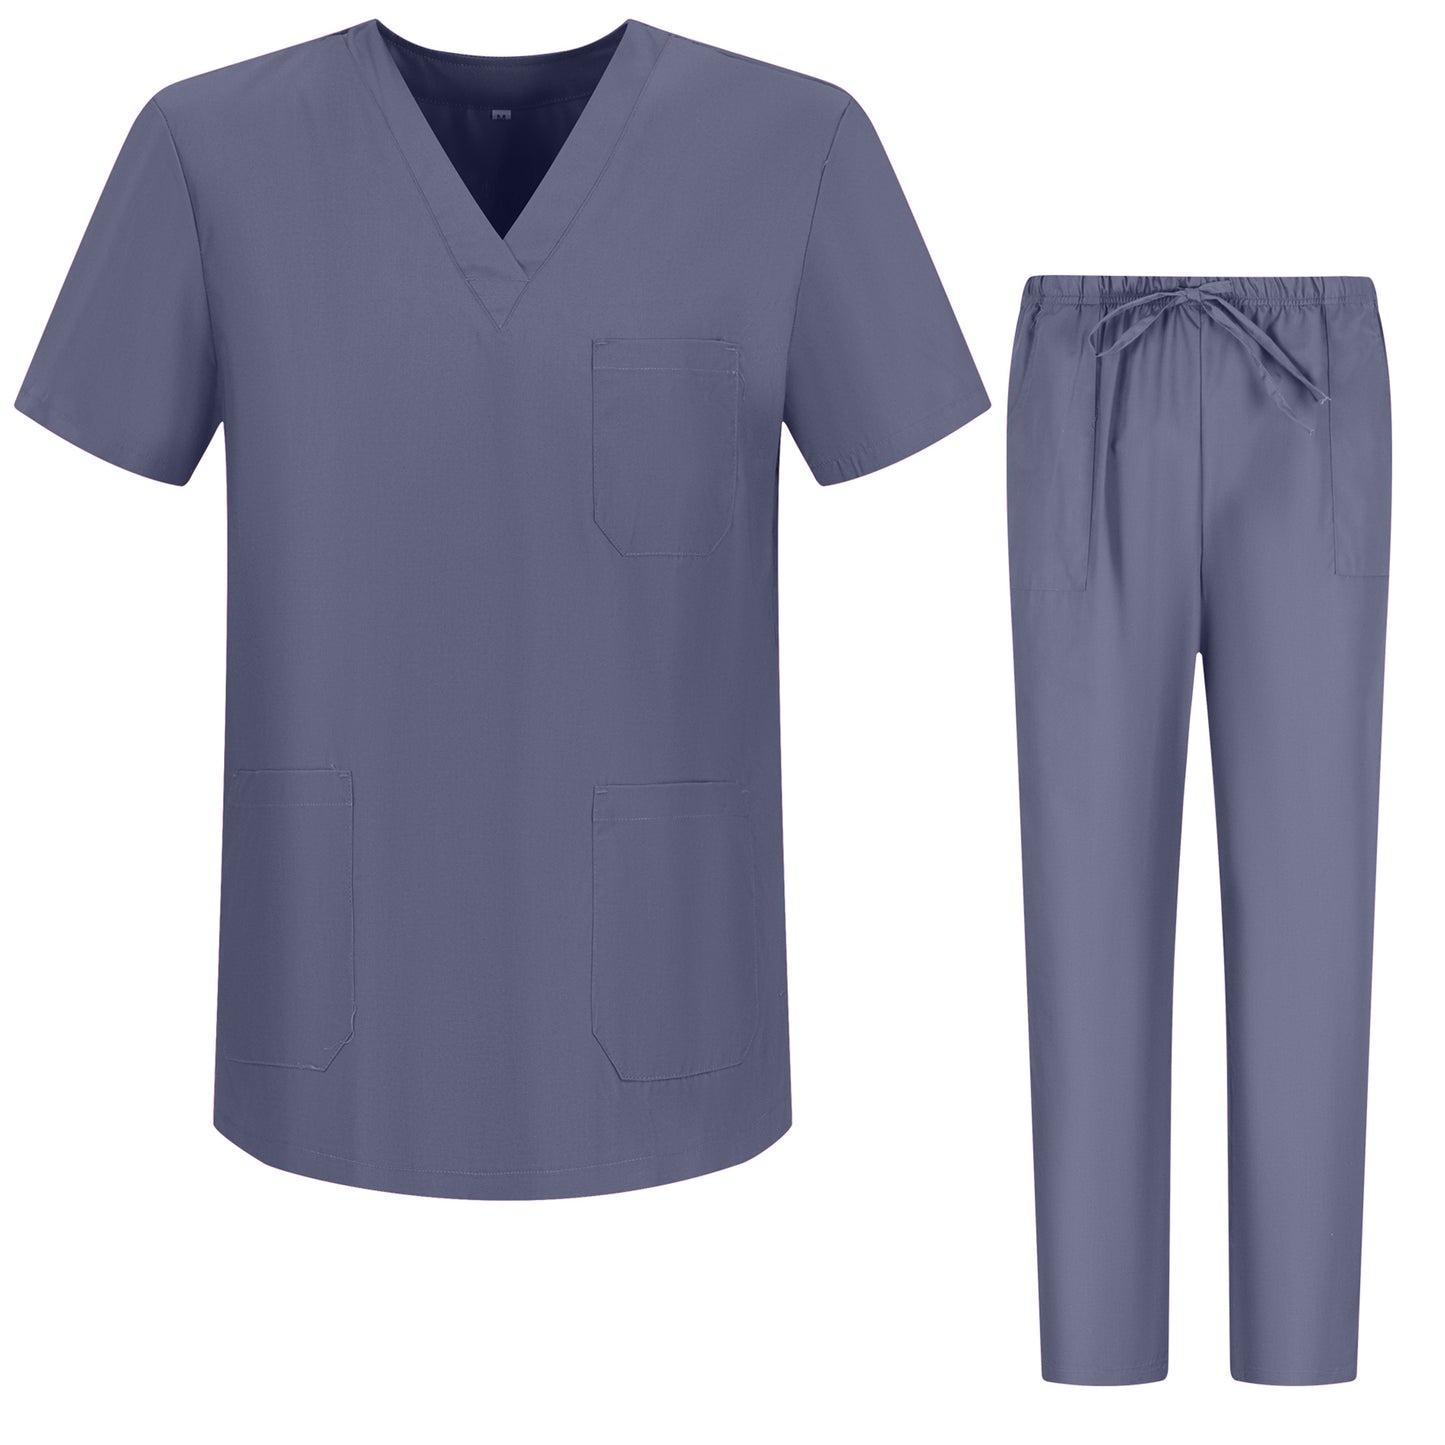 Unisex sanitaire uniformsets - Medische uniformen 6801-6802